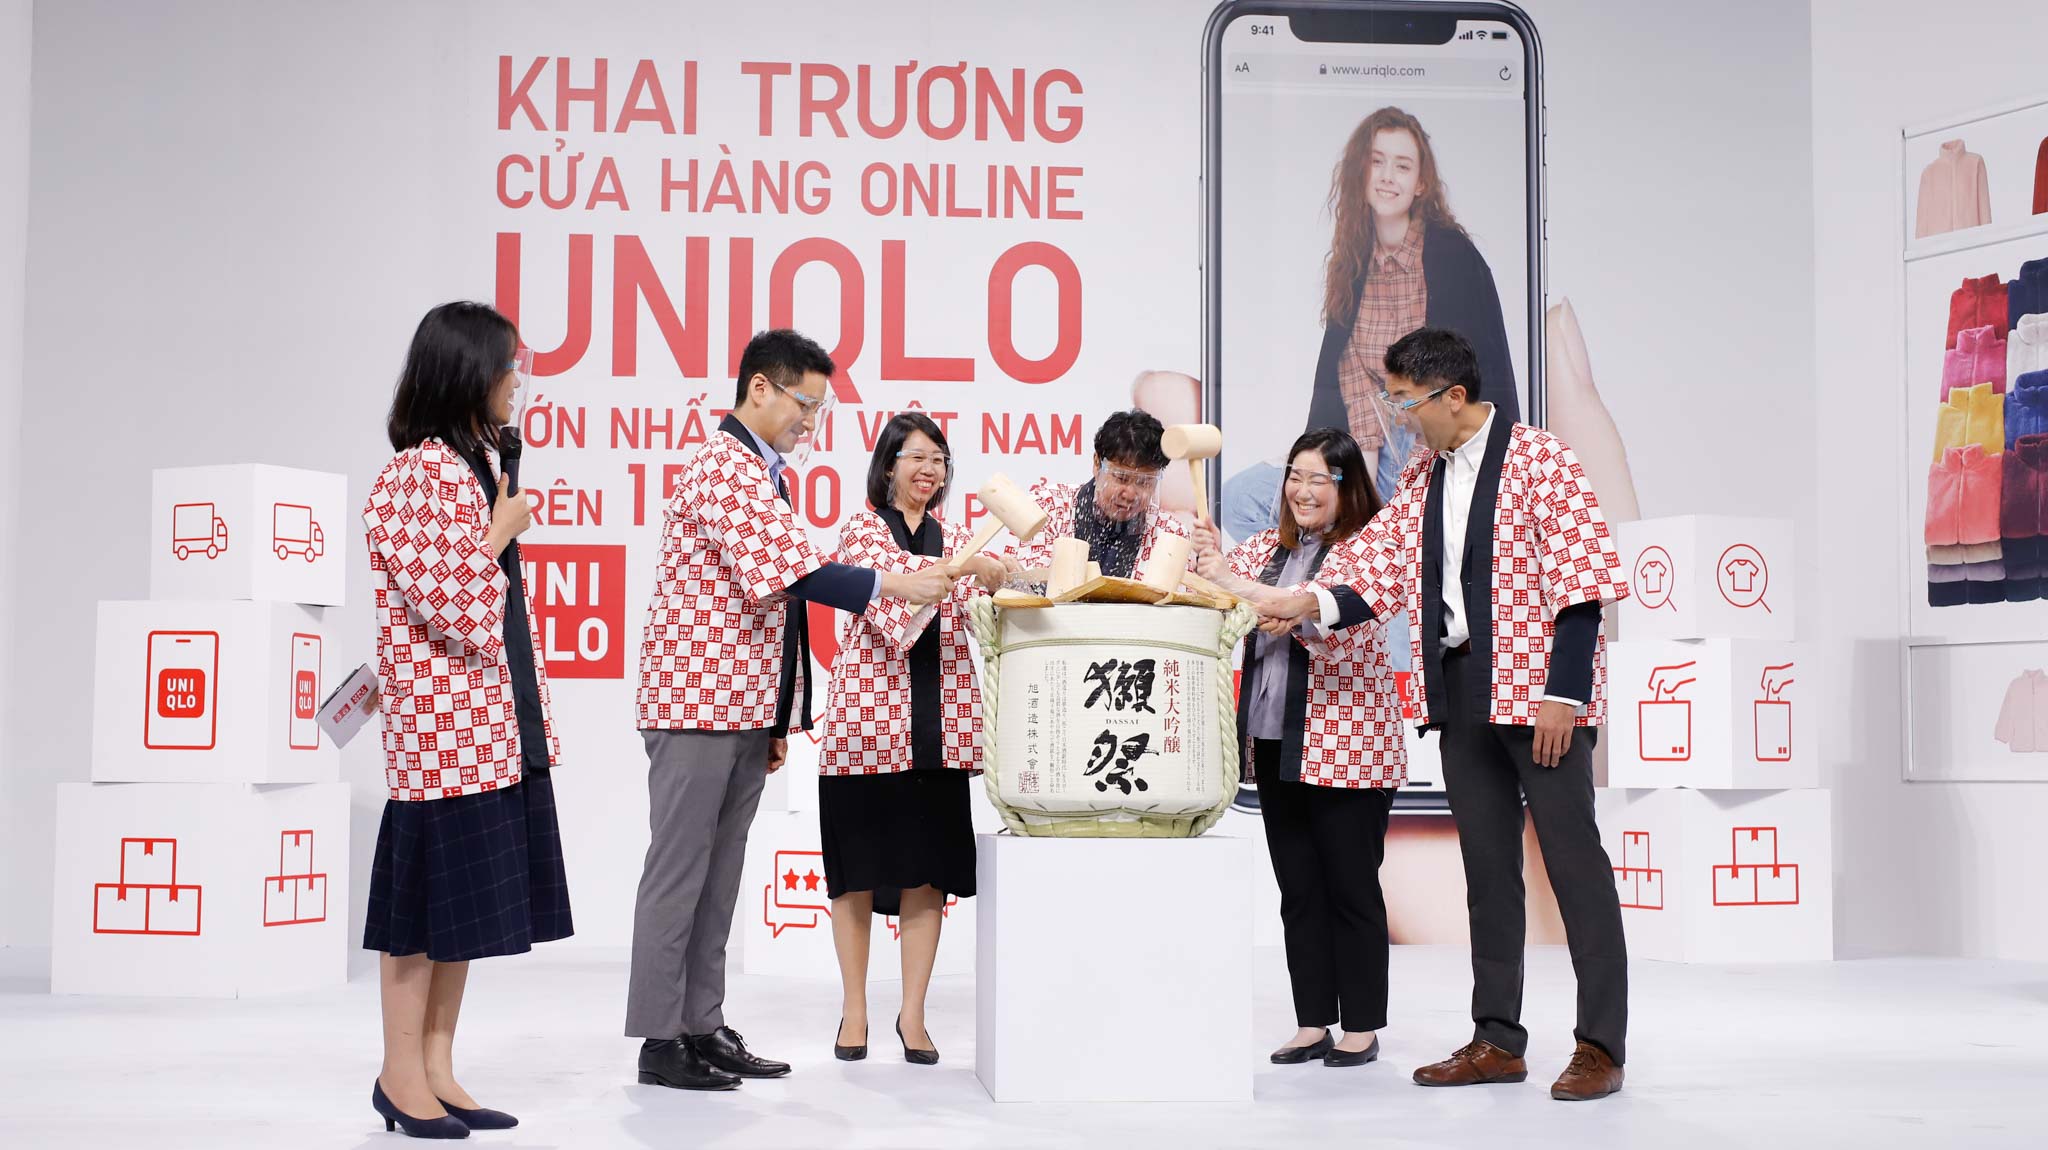 Cửa hàng UNIQLO online - Cửa hàng UNIQLO lớn nhất tại Việt Nam chính thức ra mắt